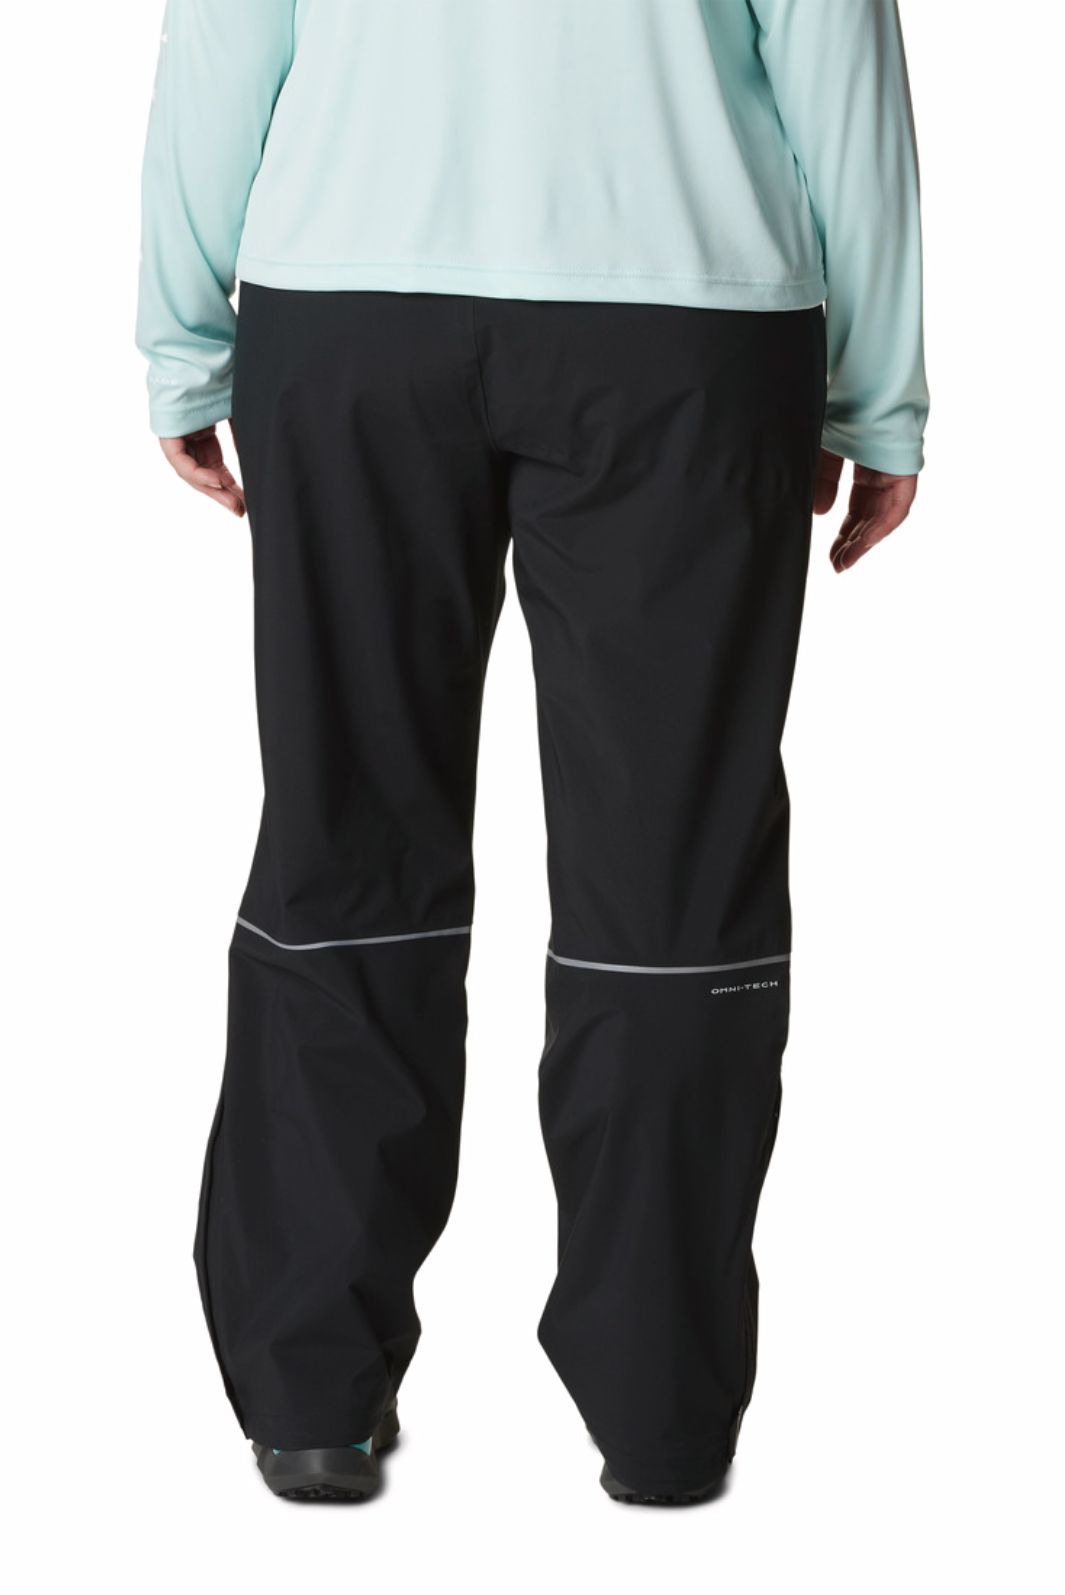 Pantalon de Pluie Hazy Trail™ Petite Taille Plus de Columbia